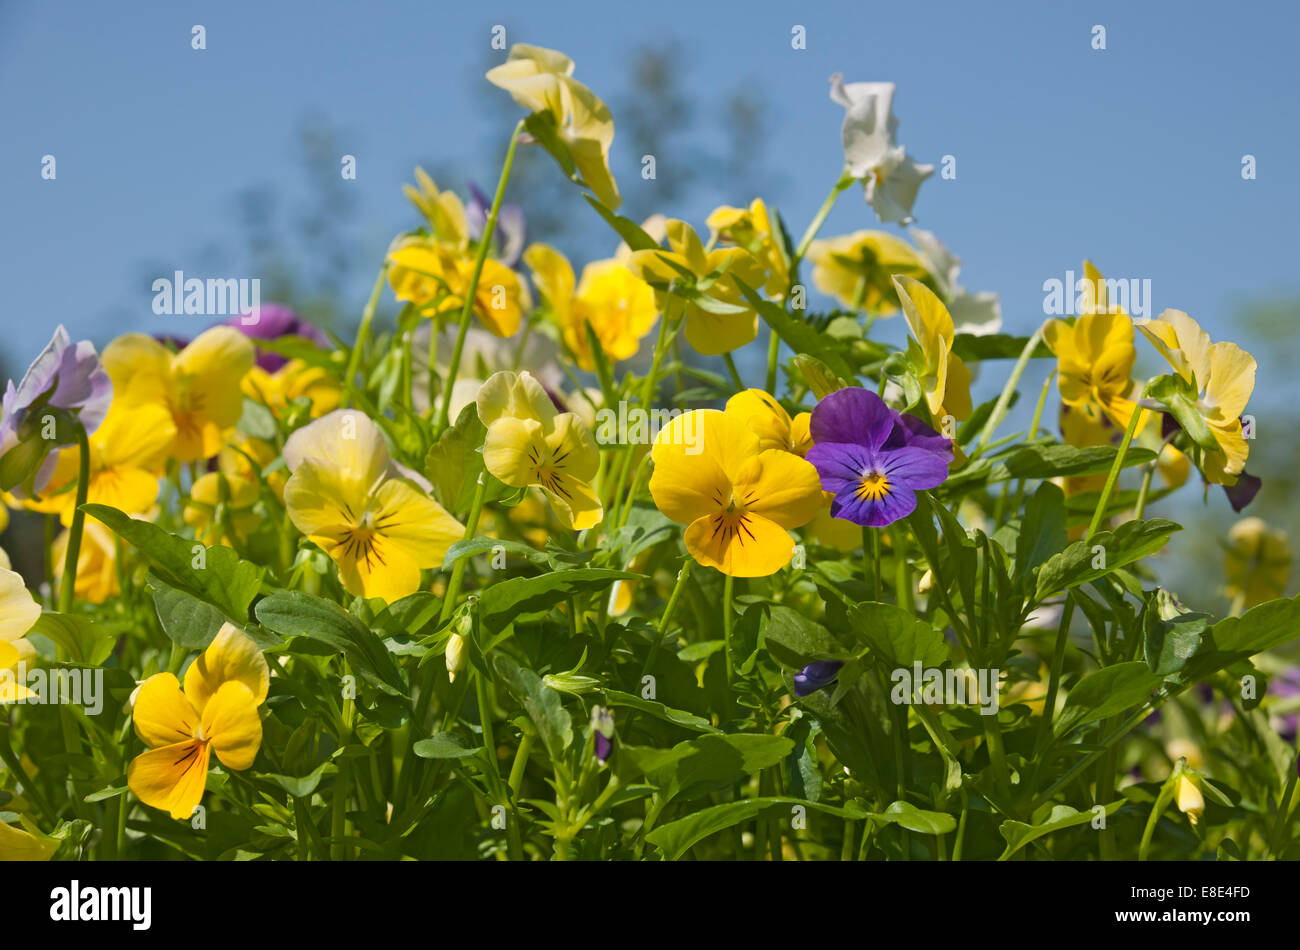 Gros plan des fleurs de violons jaunes fleur de Viola en fleurs Été Angleterre Royaume-Uni Royaume-Uni Grande-Bretagne Banque D'Images